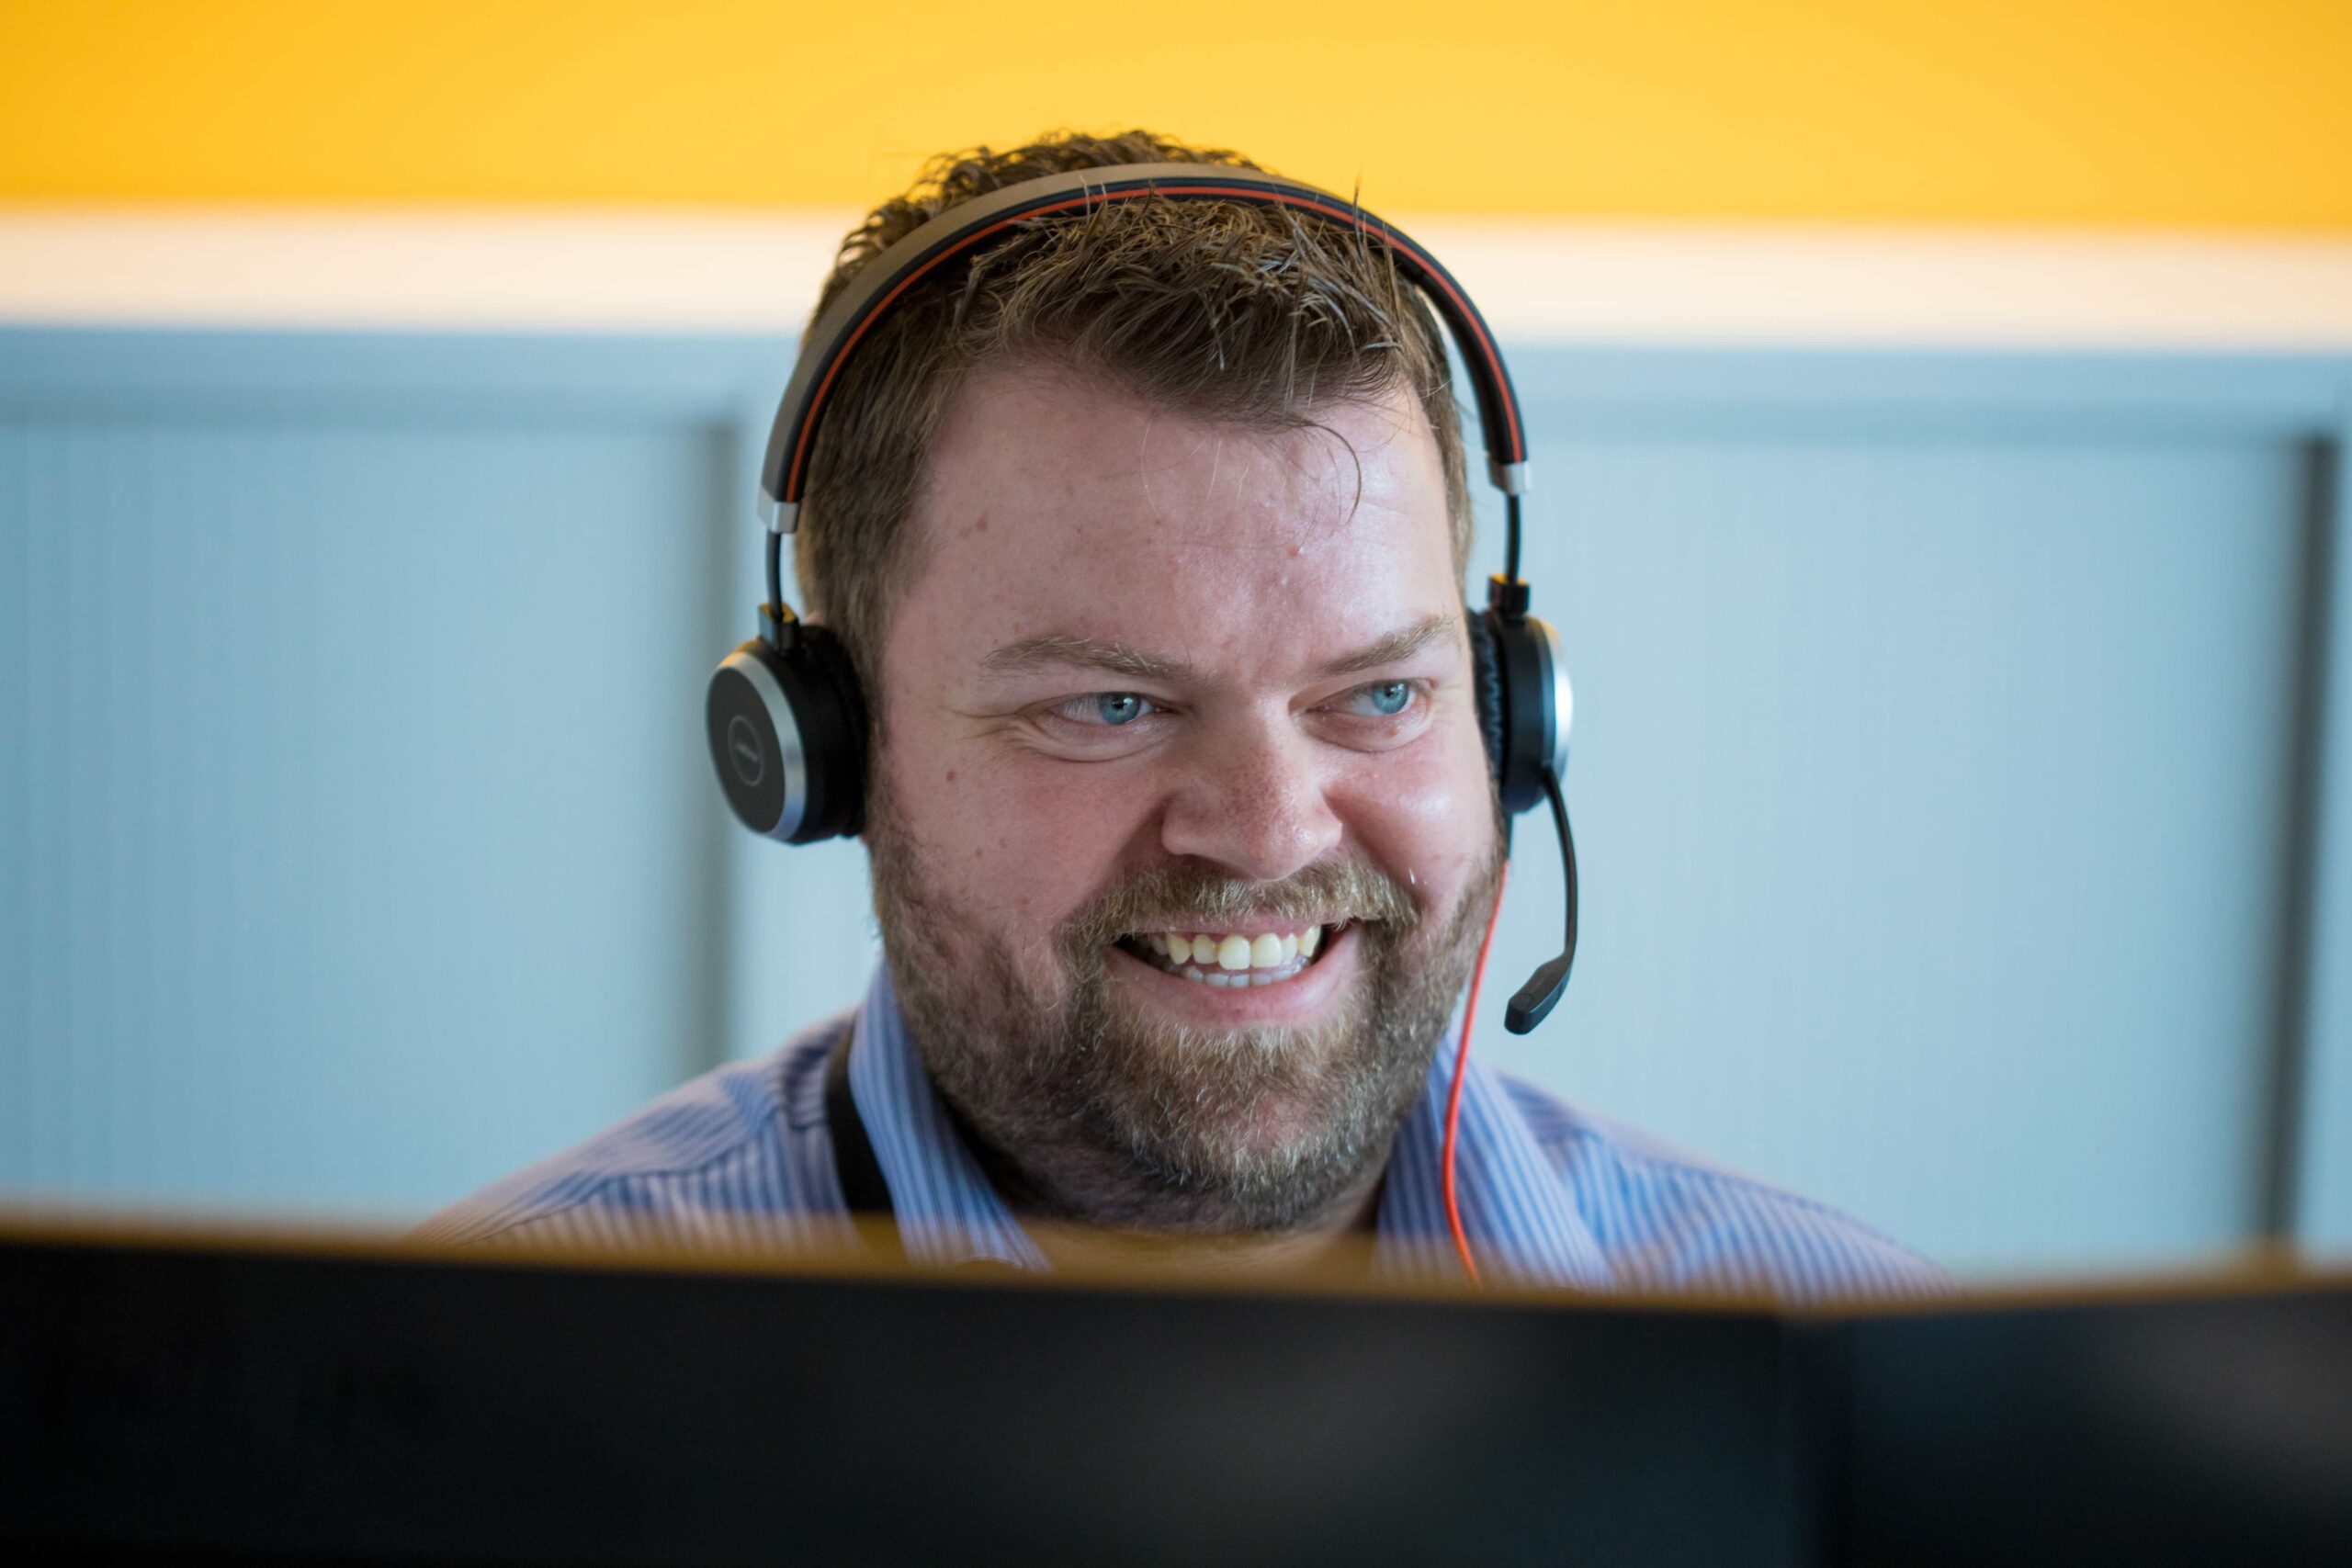 man smiling wearing headset